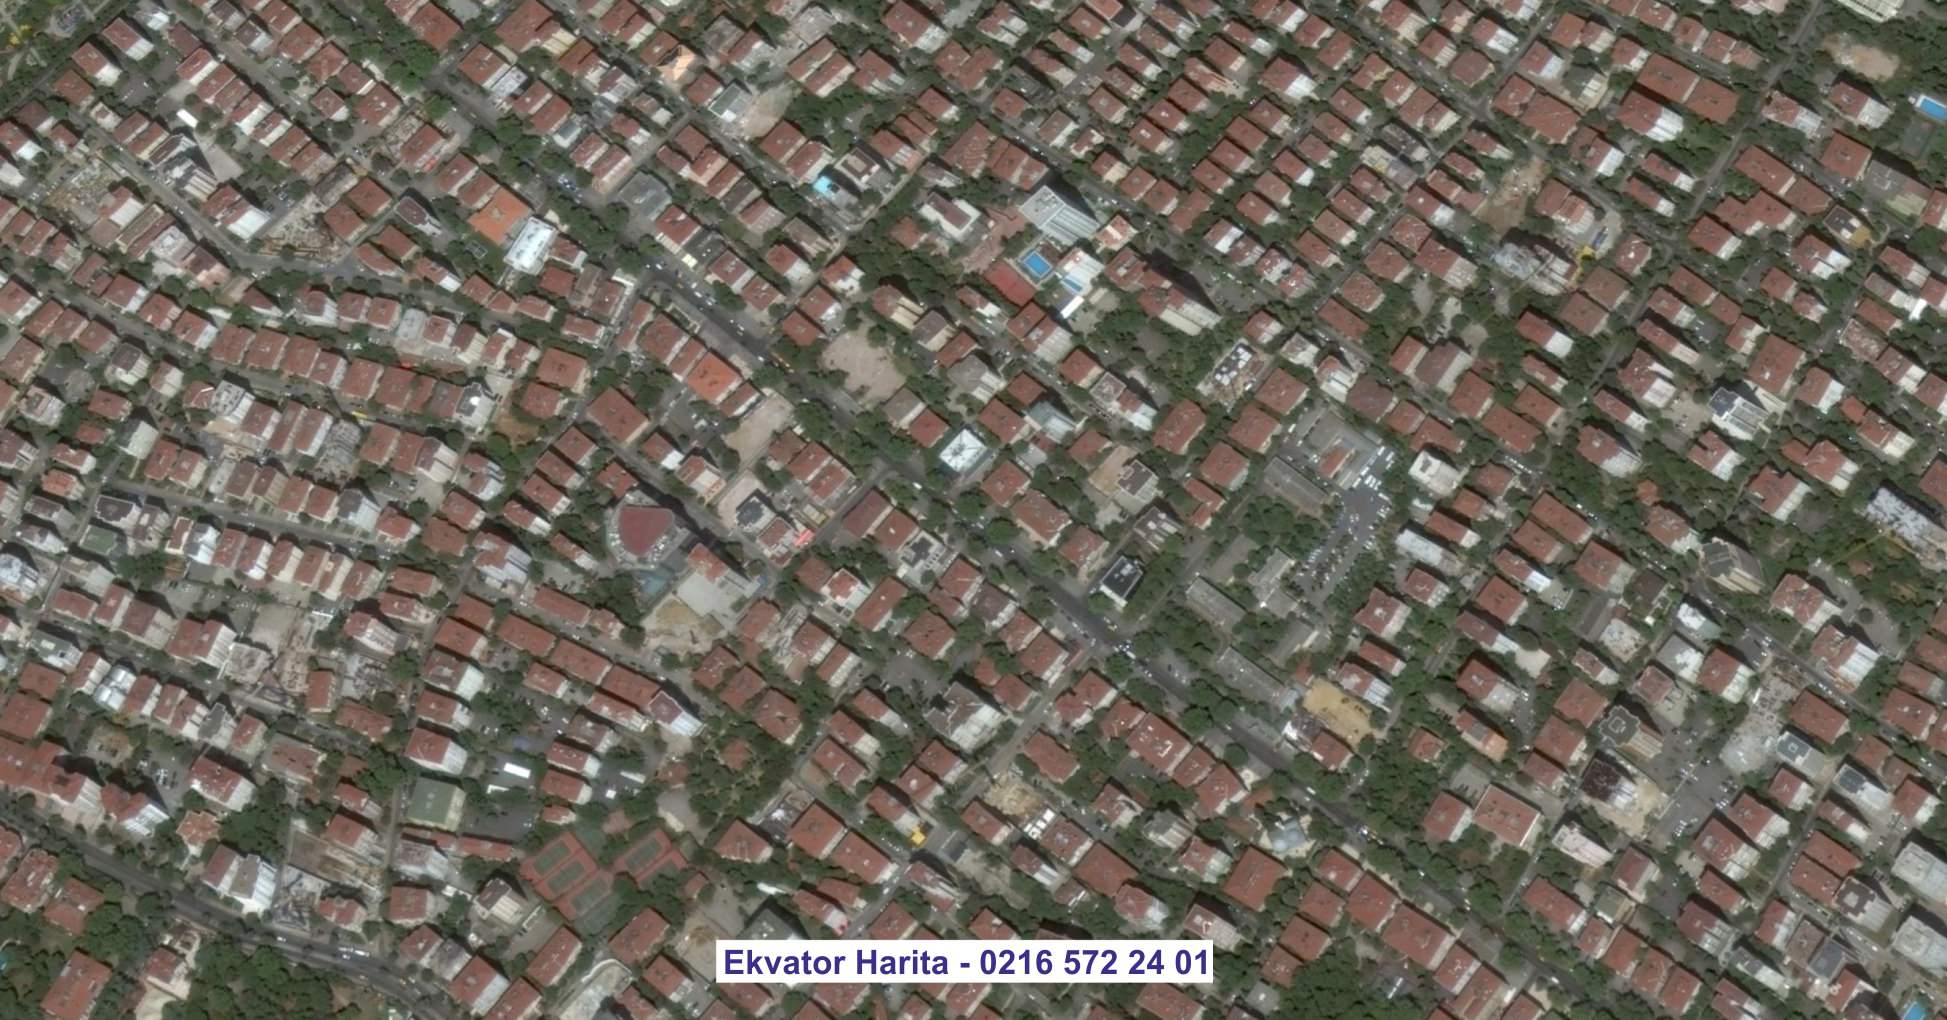 Üsküdar Uydu Görüntüsü Örnek Fotoğrafı